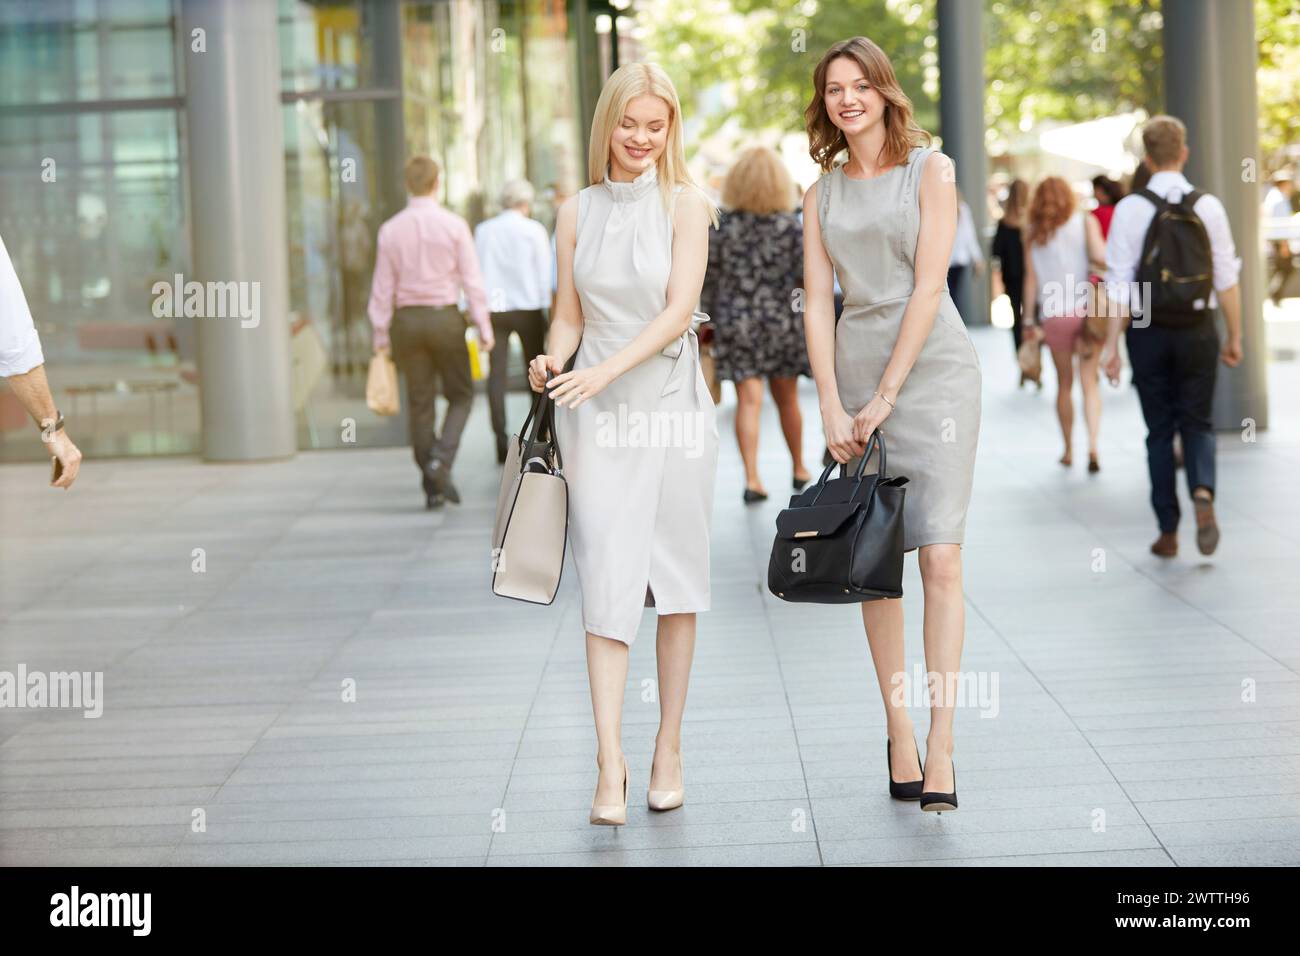 Zwei Frauen, die in einer städtischen Umgebung spazieren gehen Stockfoto